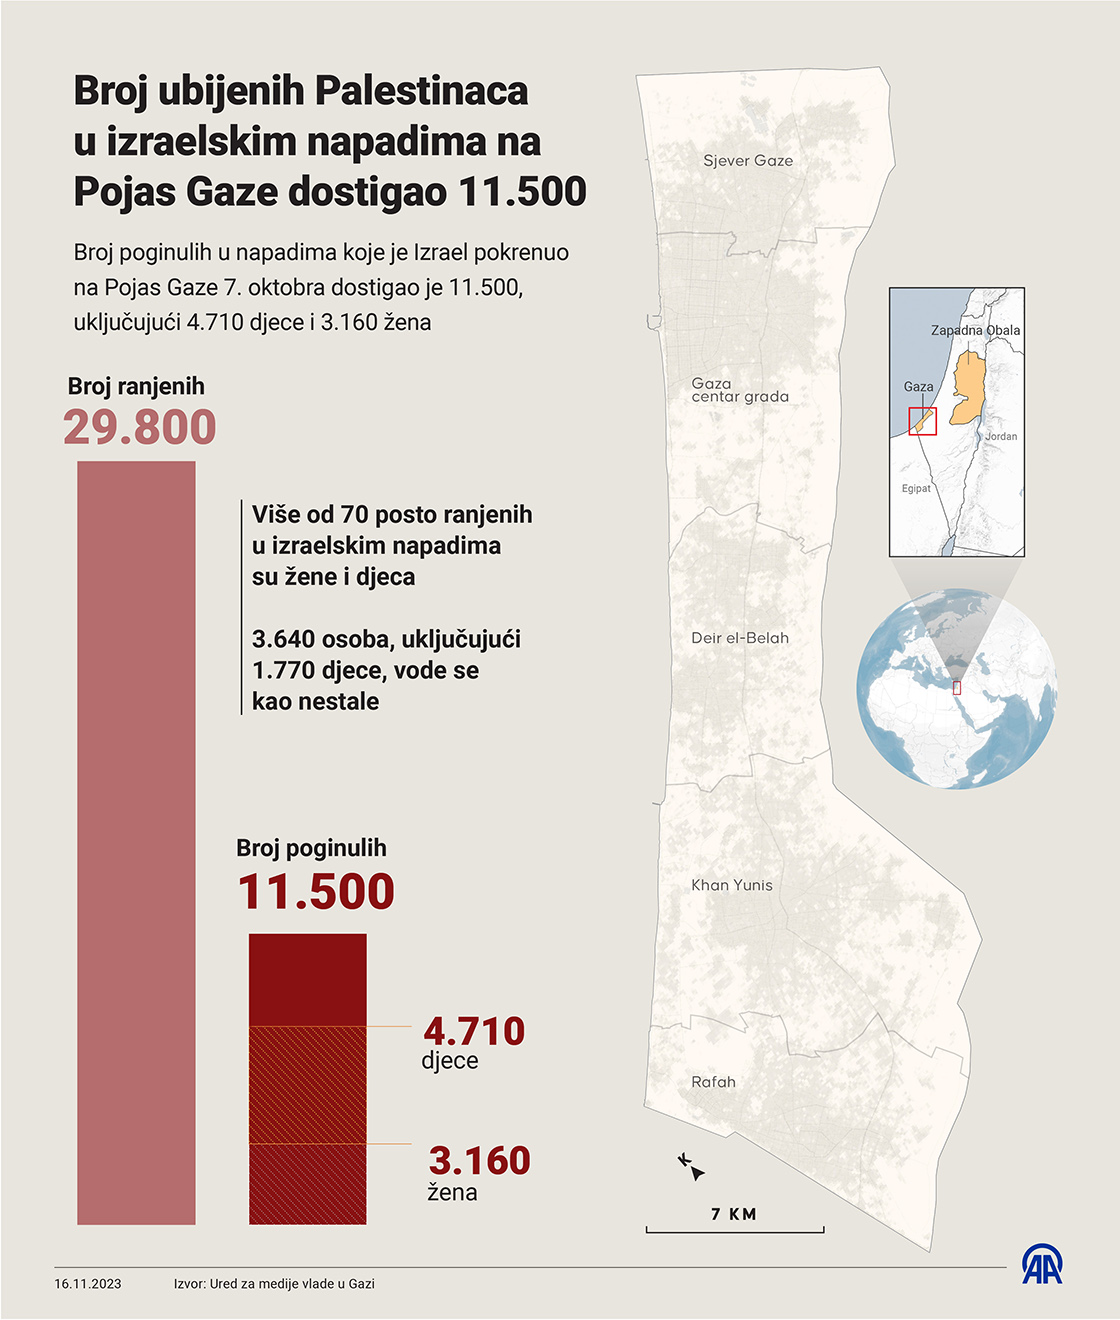 Broj ubijenih Palestinaca u izraelskim napadima na Pojas Gaze dostigao 11.500